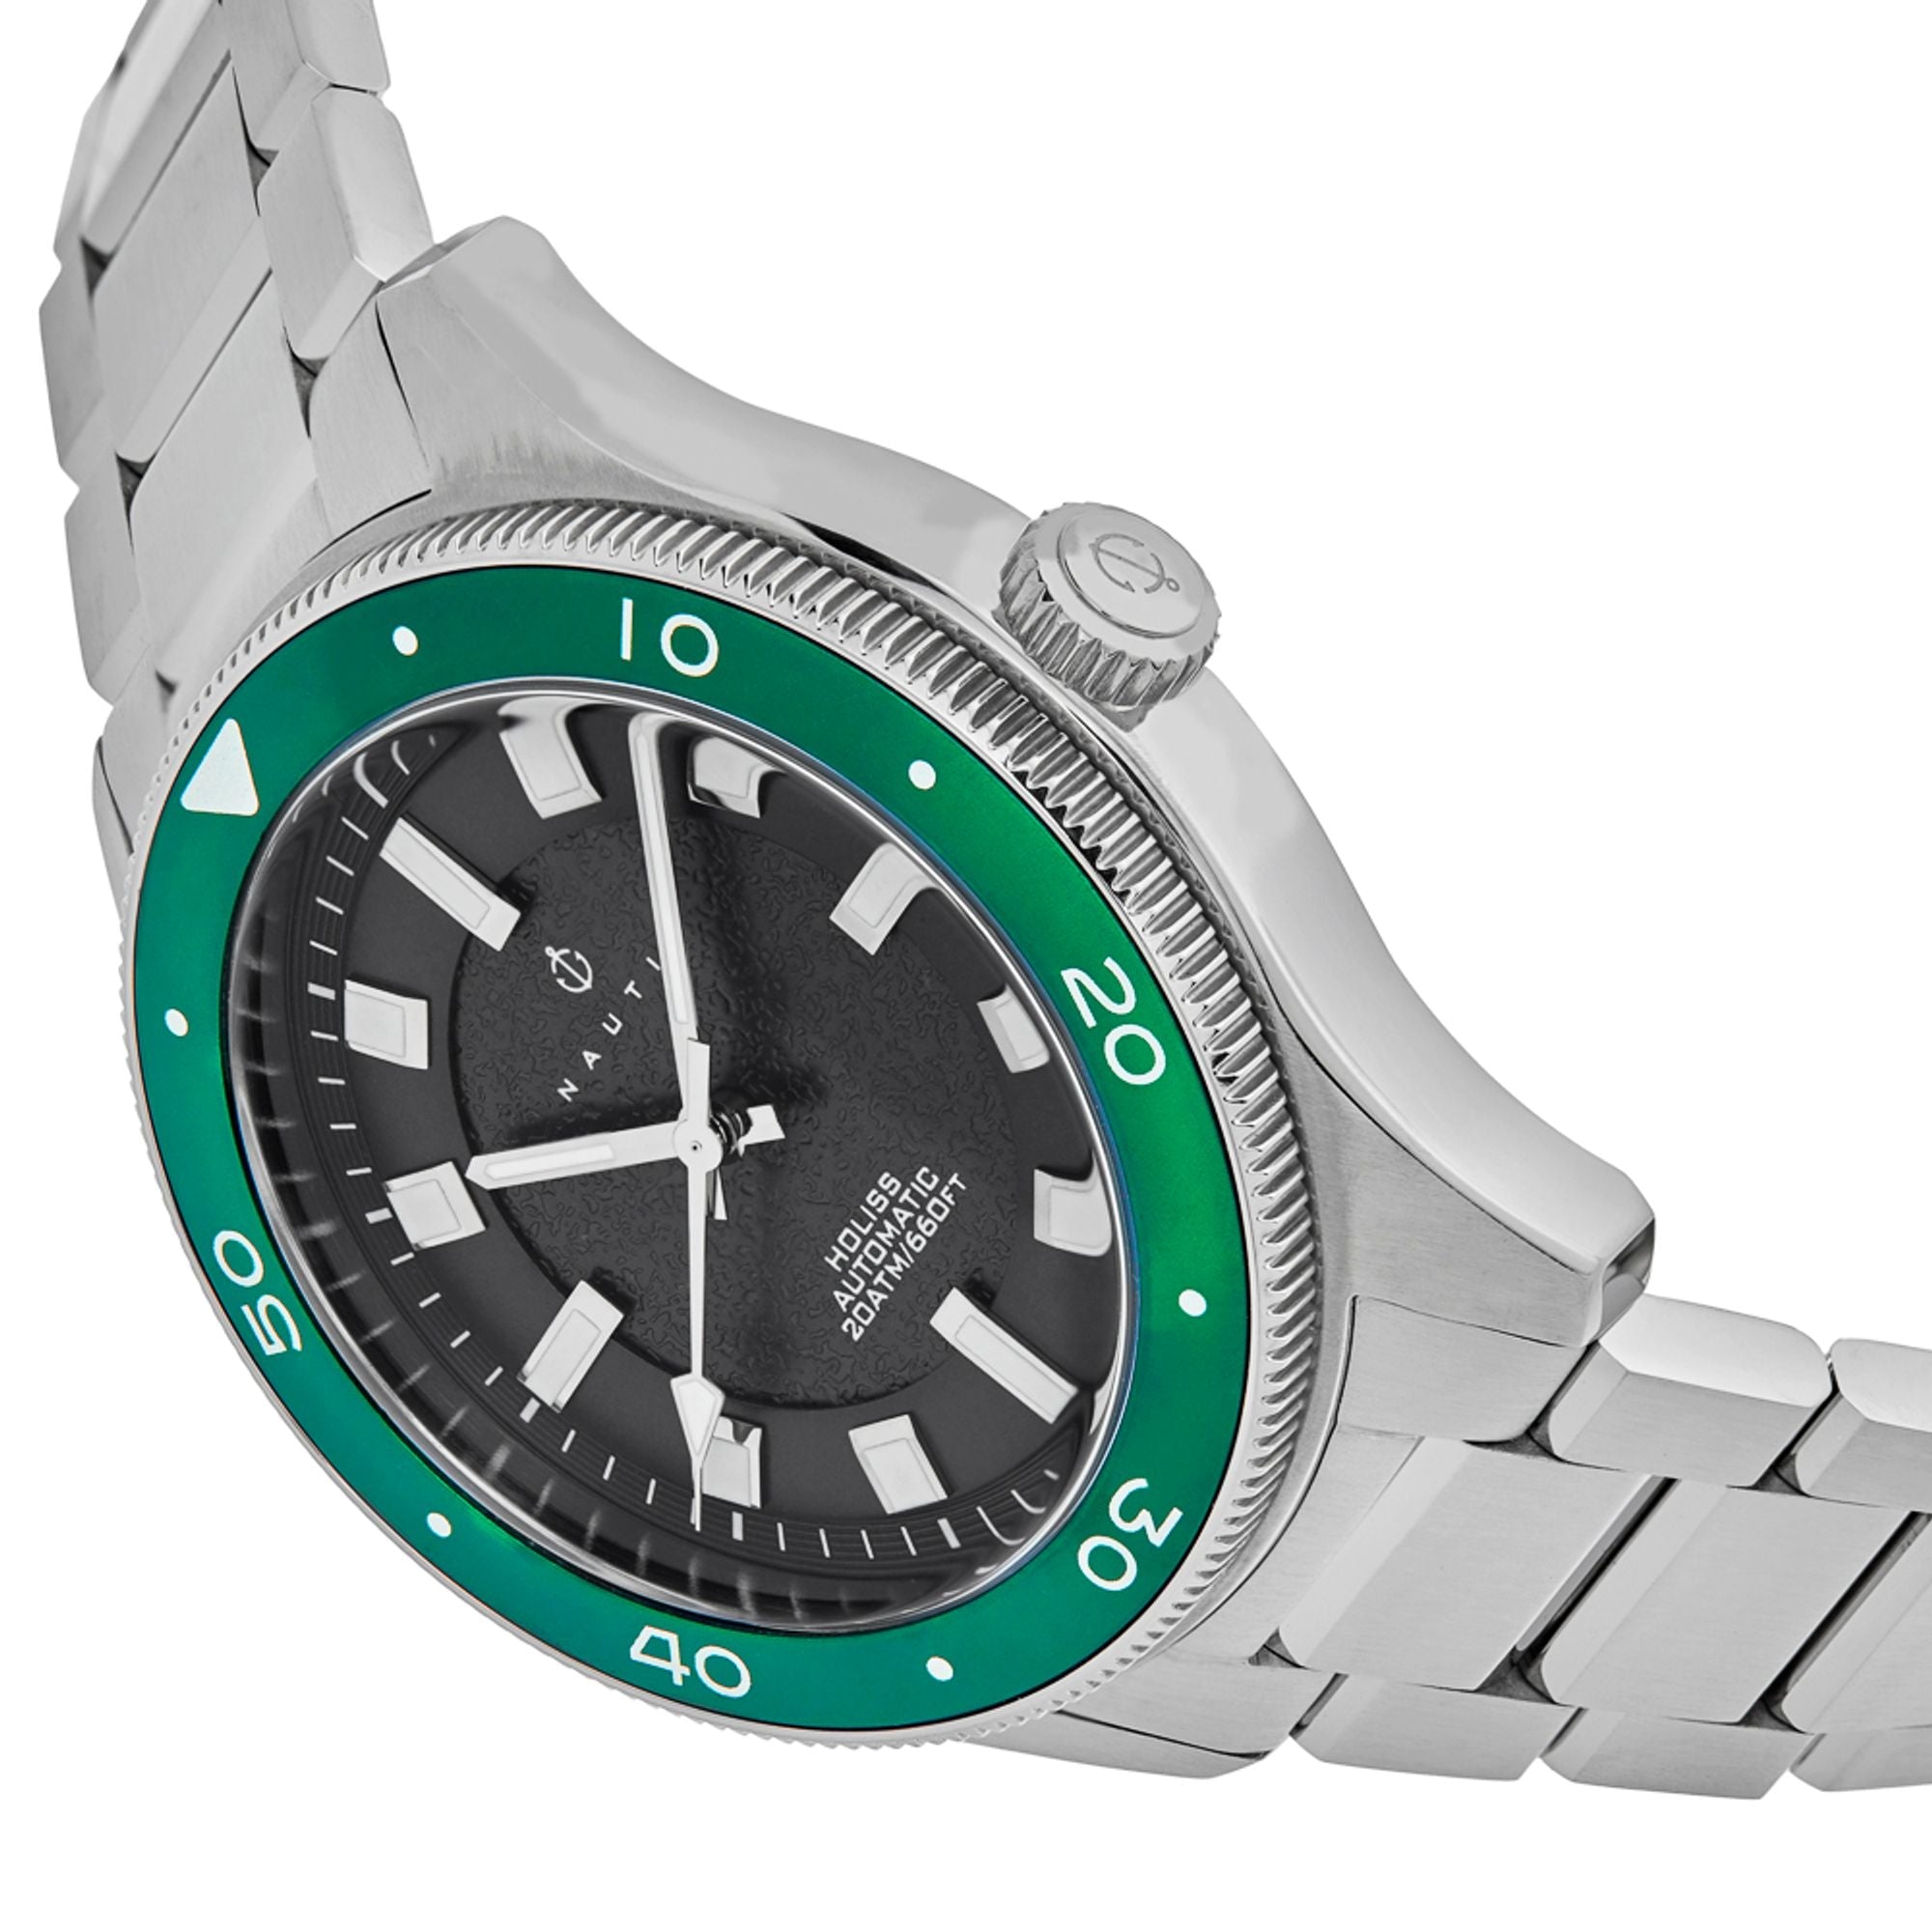 Nautis Holiss Automatic Watch - Silver/Green- NAUN103-3